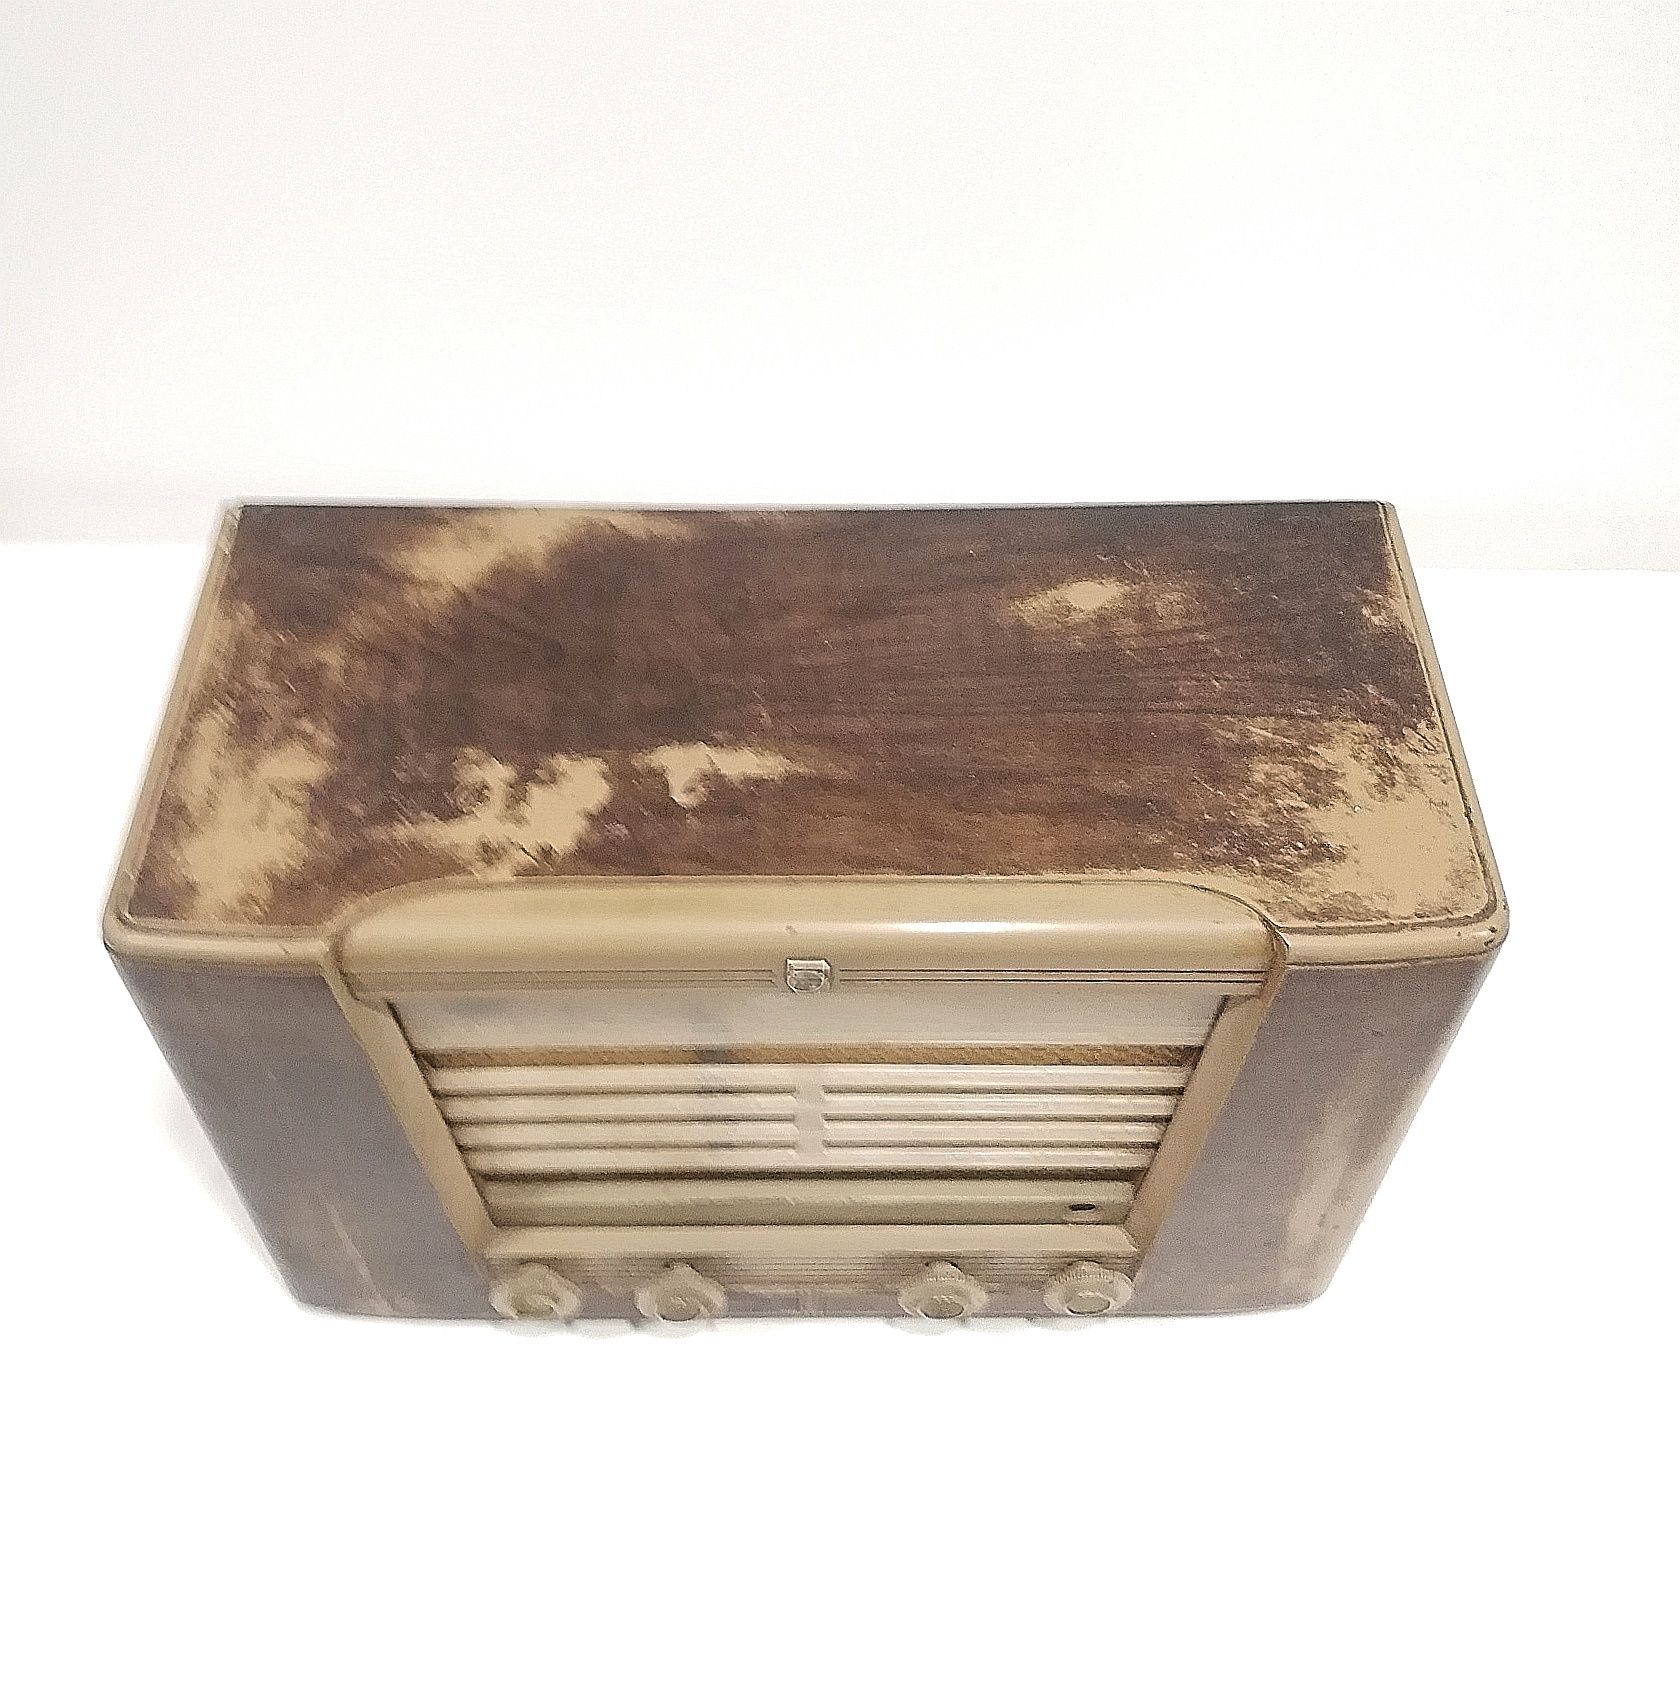 Rádio vintage Philips Bx505 A/11, de 1951

Dimensões: L 50 × A 30 ×